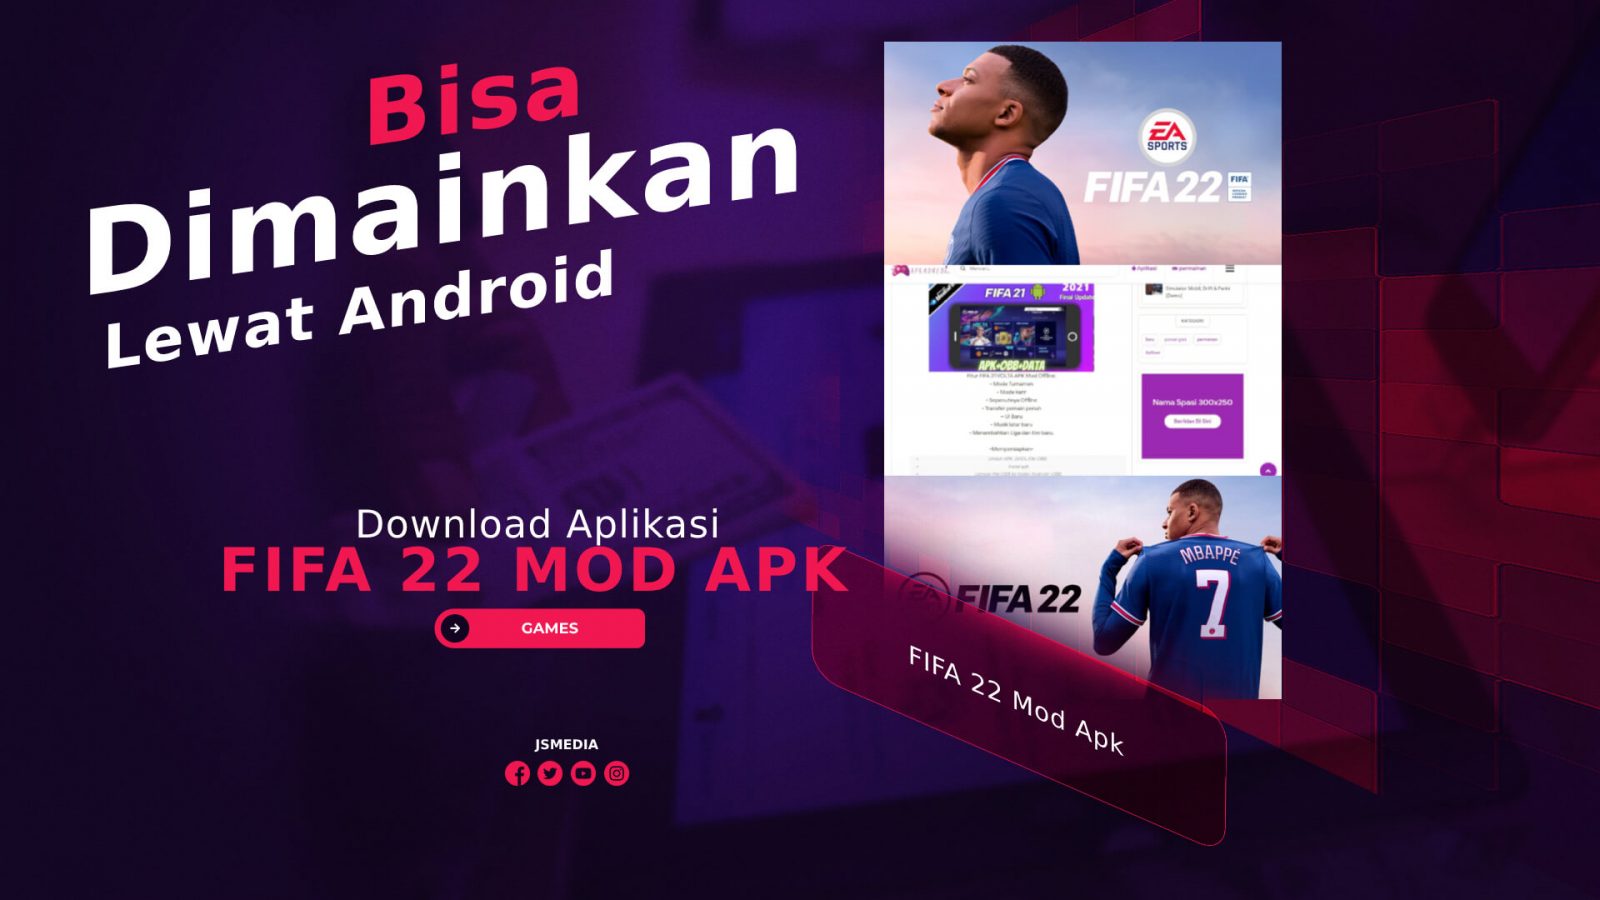 Download Aplikasi FIFA 22 Mod Apk, Ternyata Bisa Dimainkan Lewat Android